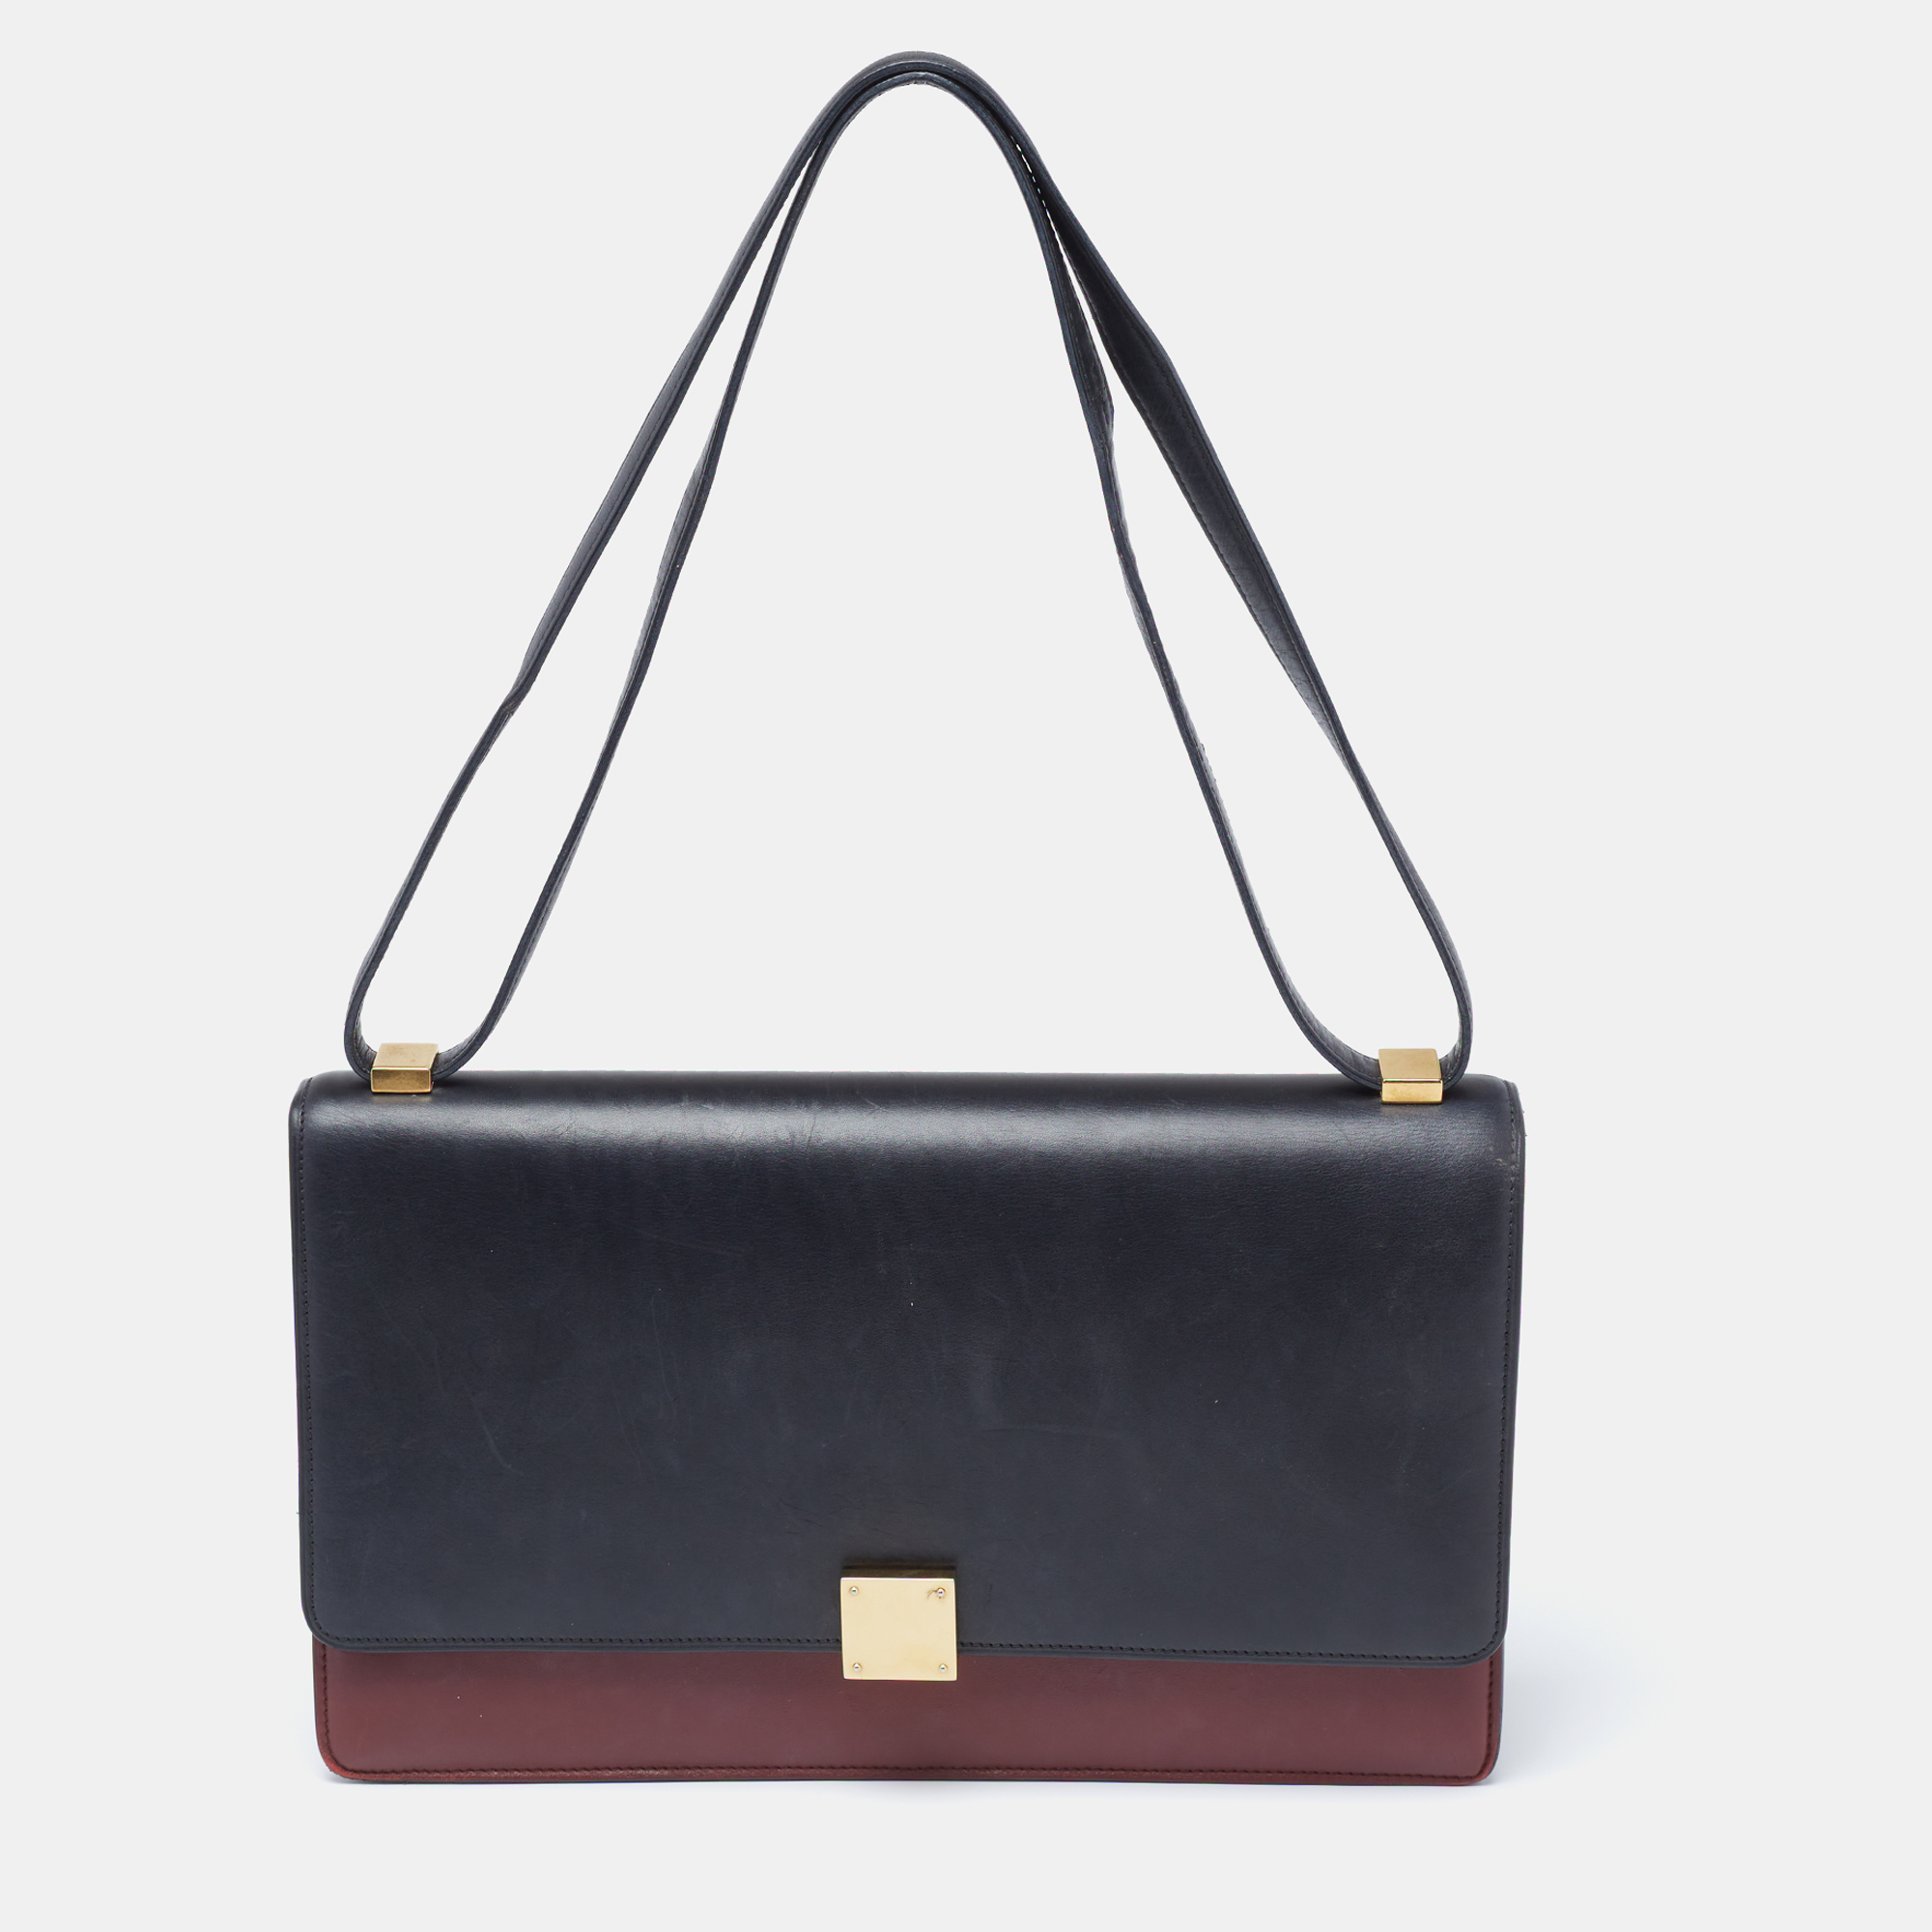 Pre-owned Celine Black/red Leather Medium Case Bag